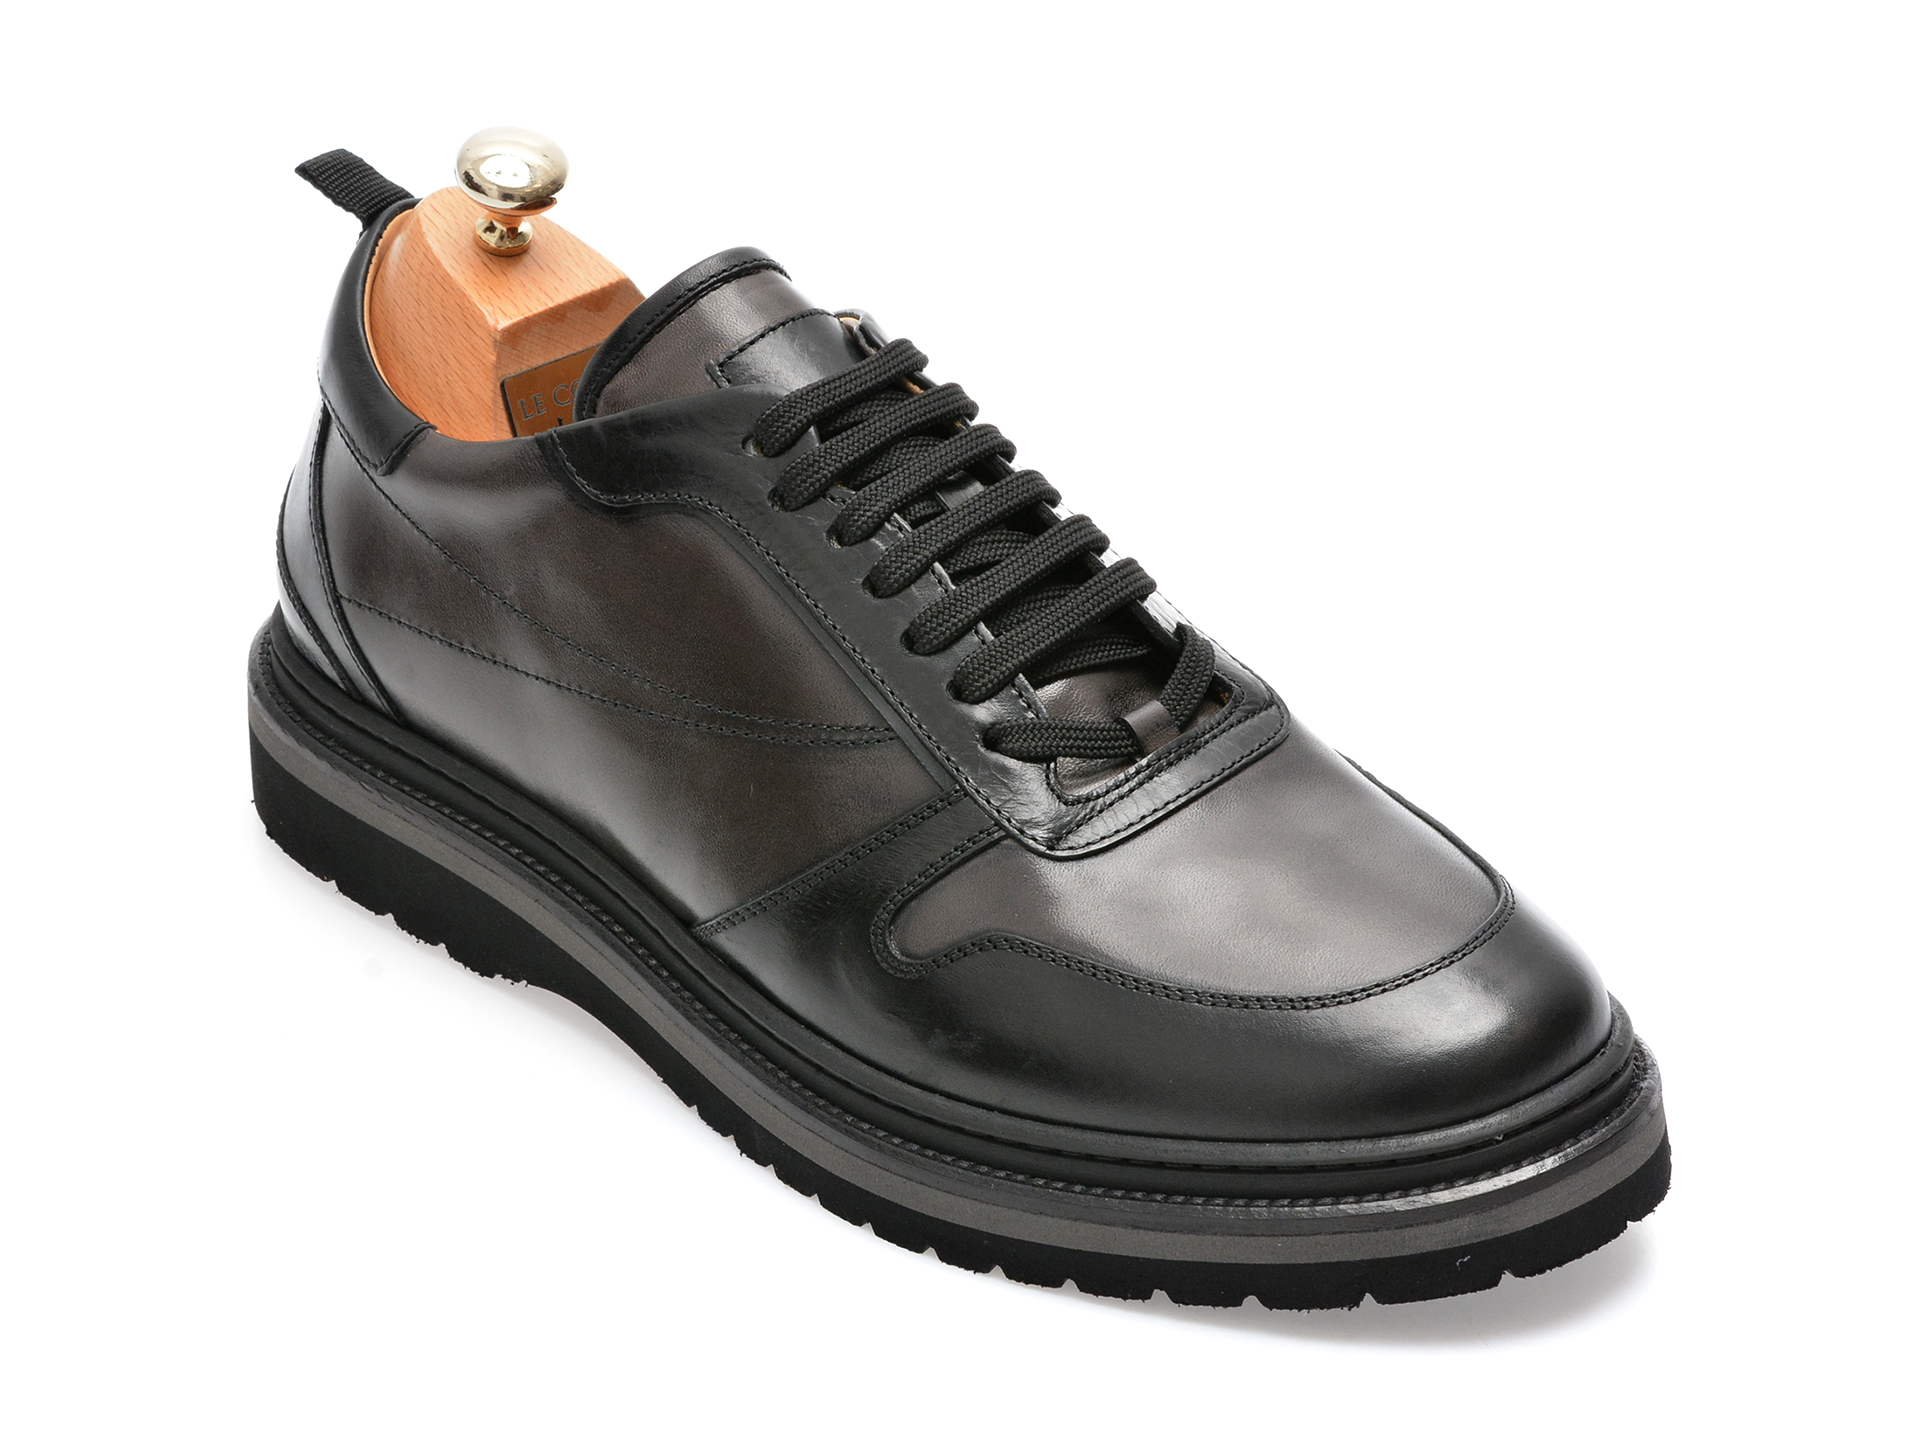 Pantofi LE COLONEL negri, 64804, din piele naturala barbati 2023-03-21